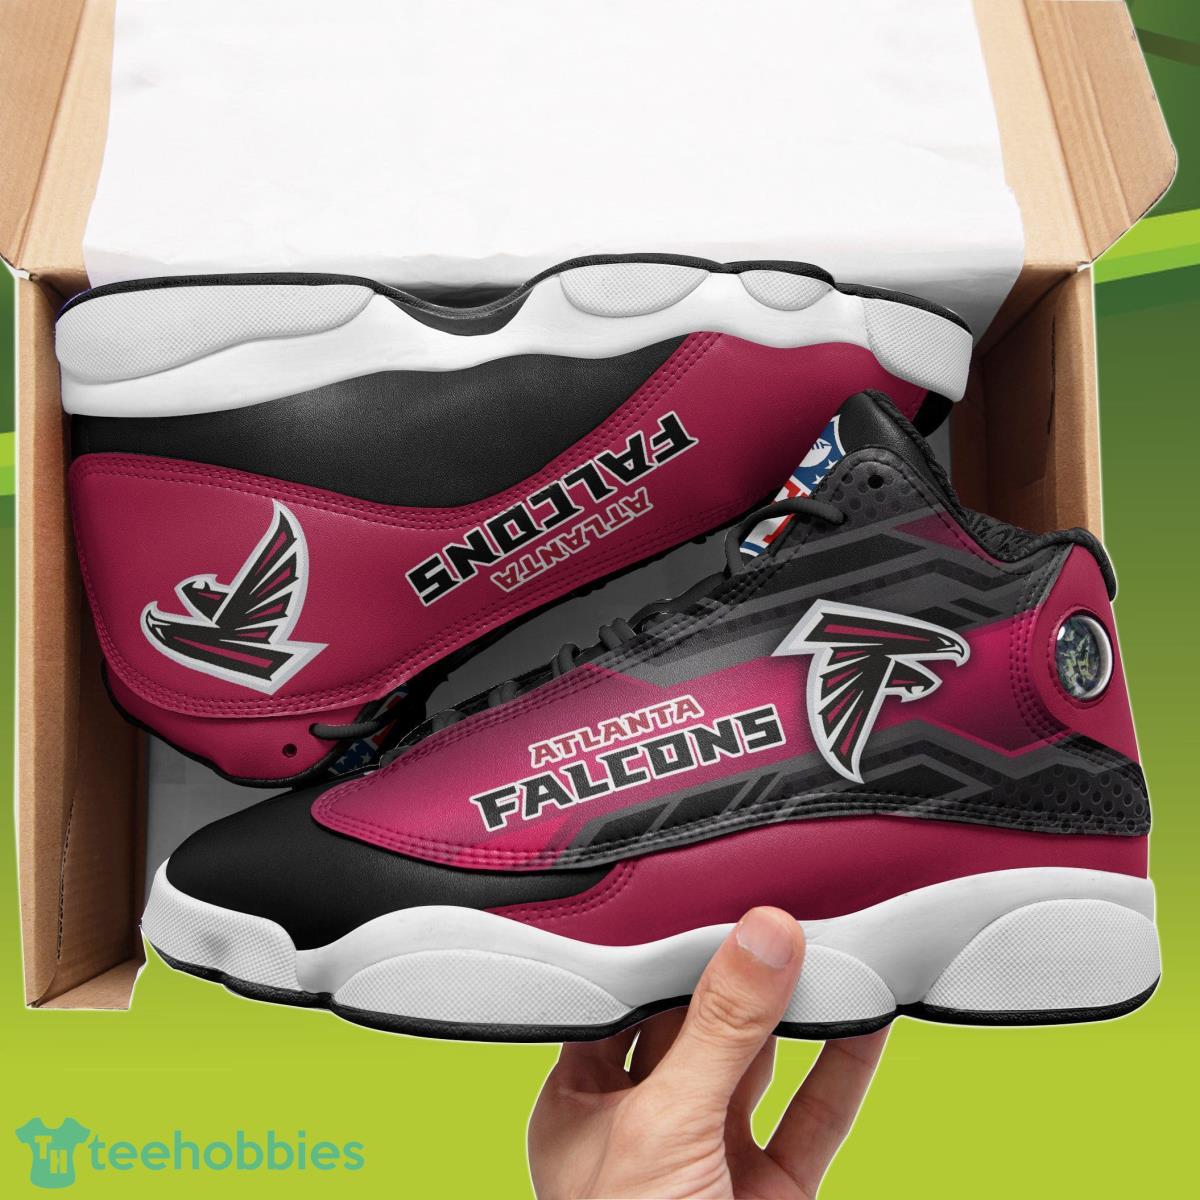 Atlanta Falcons Air Jordan 13 Sneakers Best Gift For Men And Women Product Photo 1